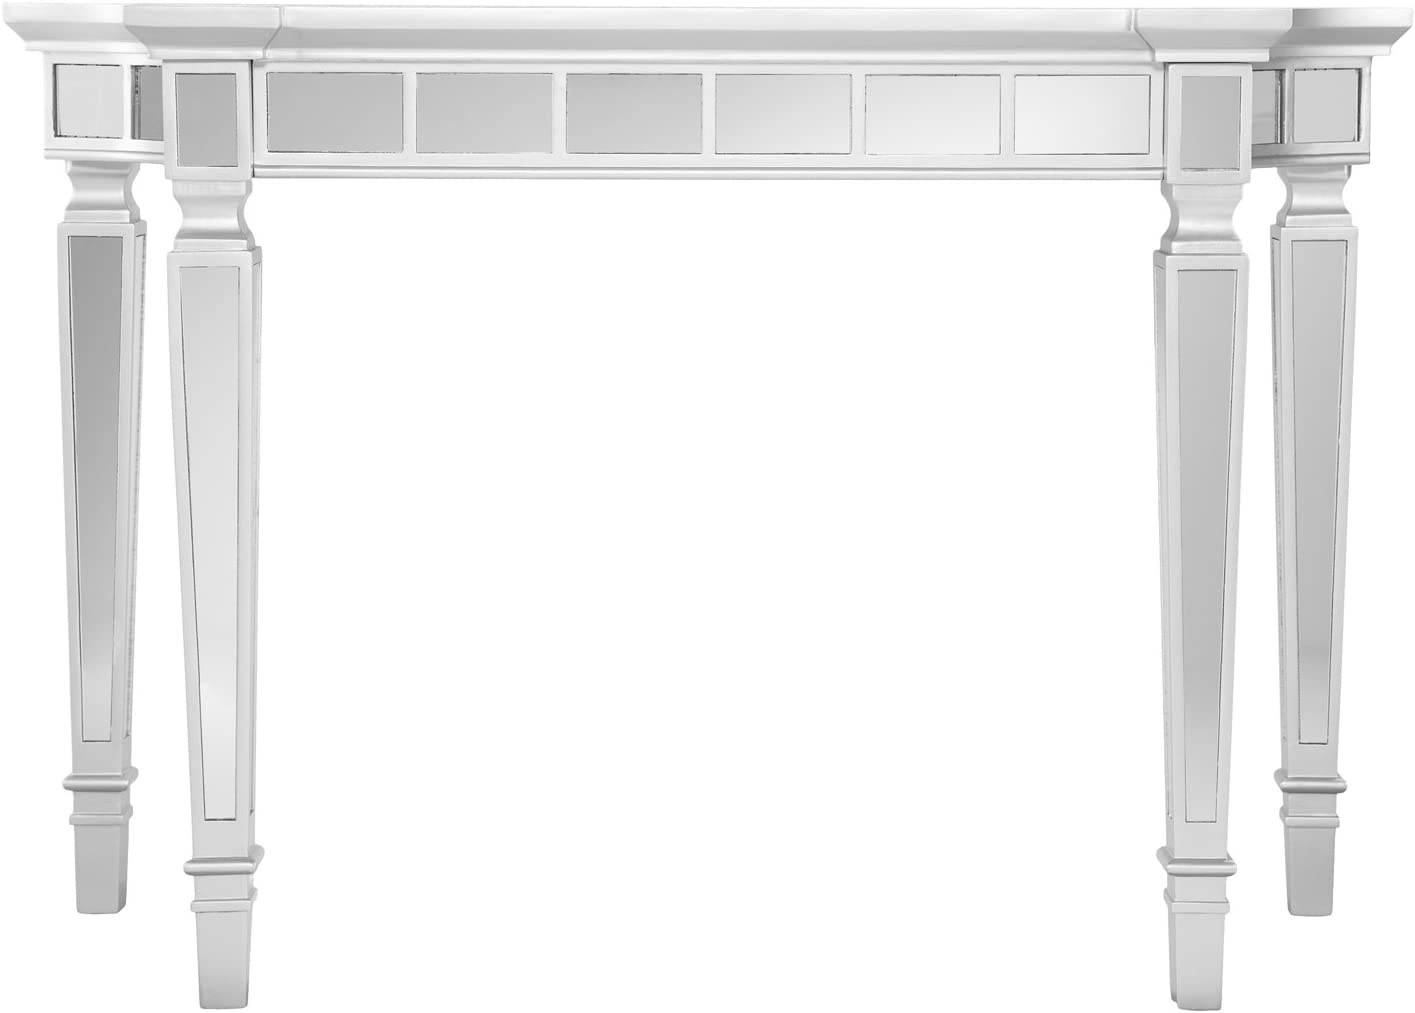 SEI Furniture Glenview Mirrored Matte Silver Trim Console Table